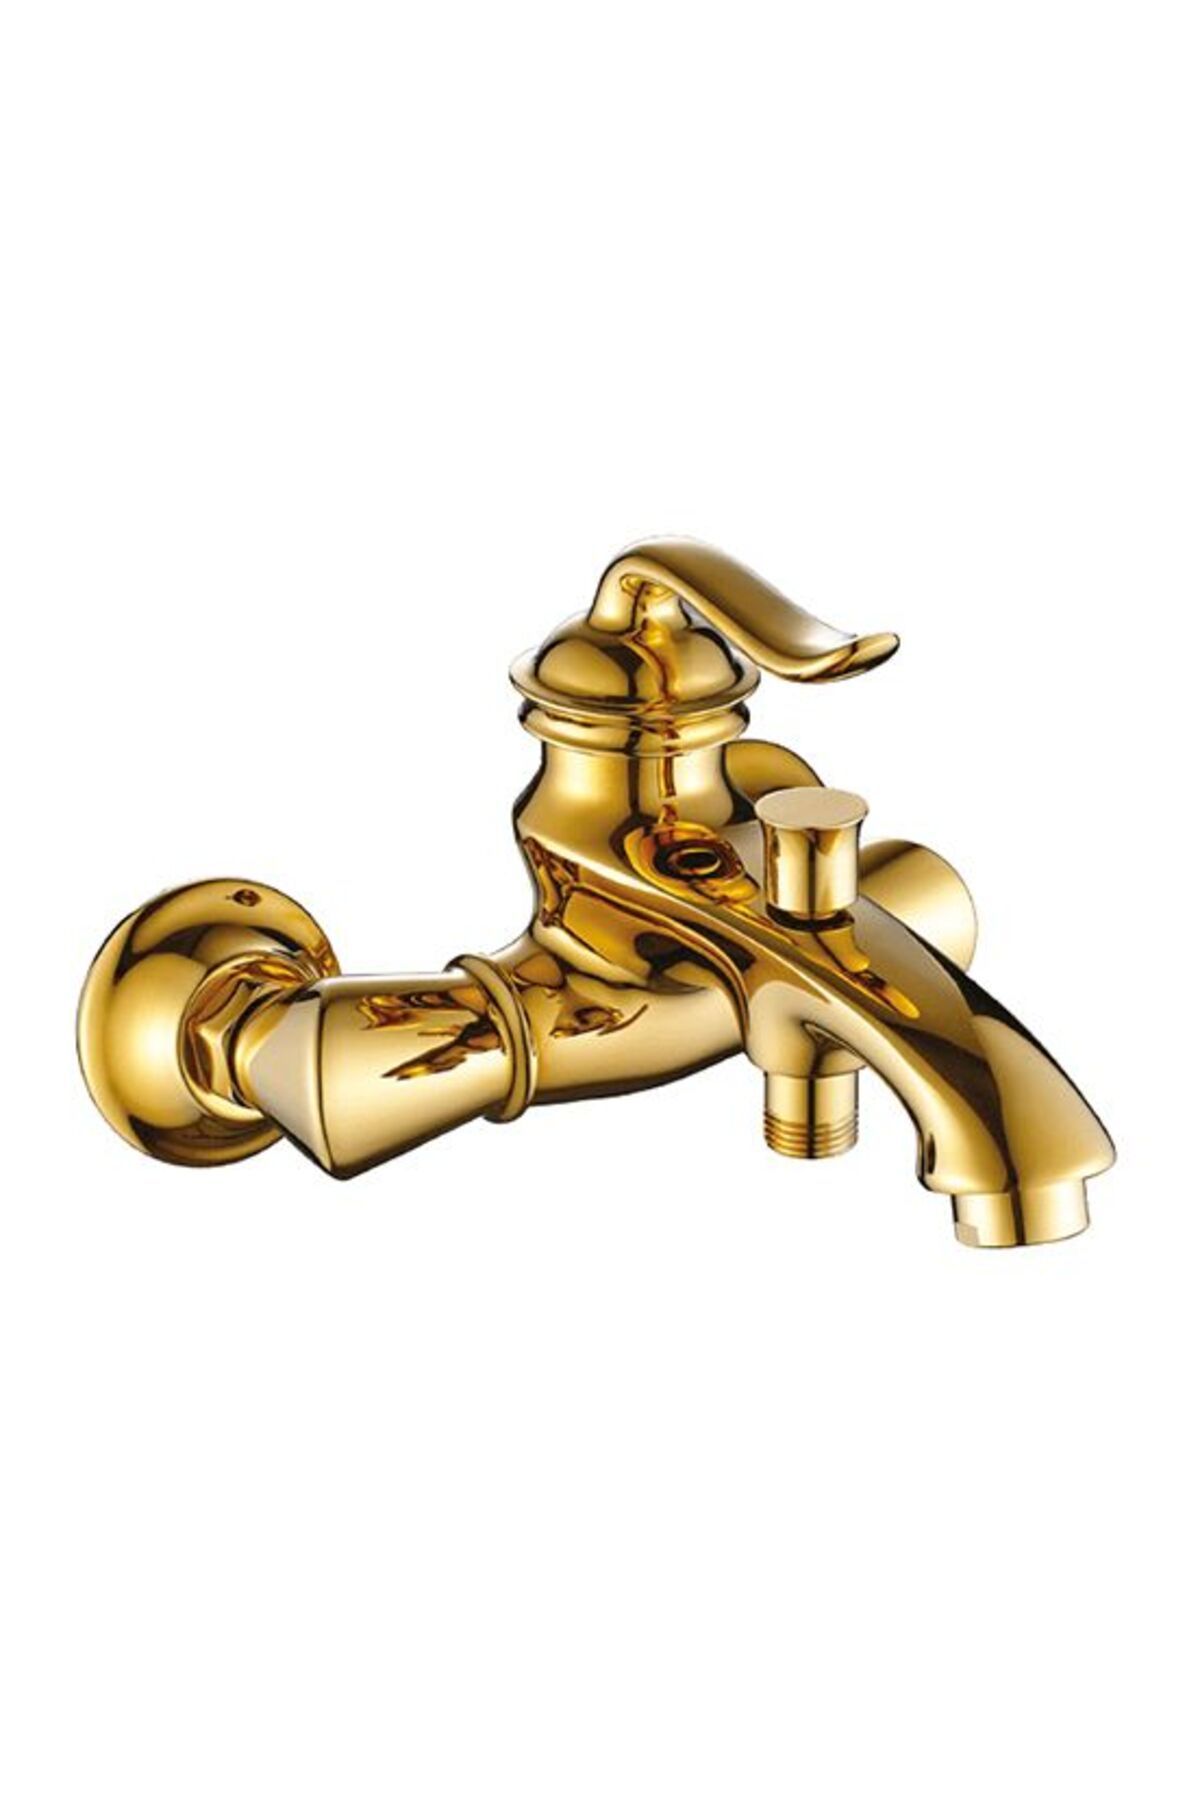 ACAR Elegant Gold Banyo Bataryası Altın Renkli